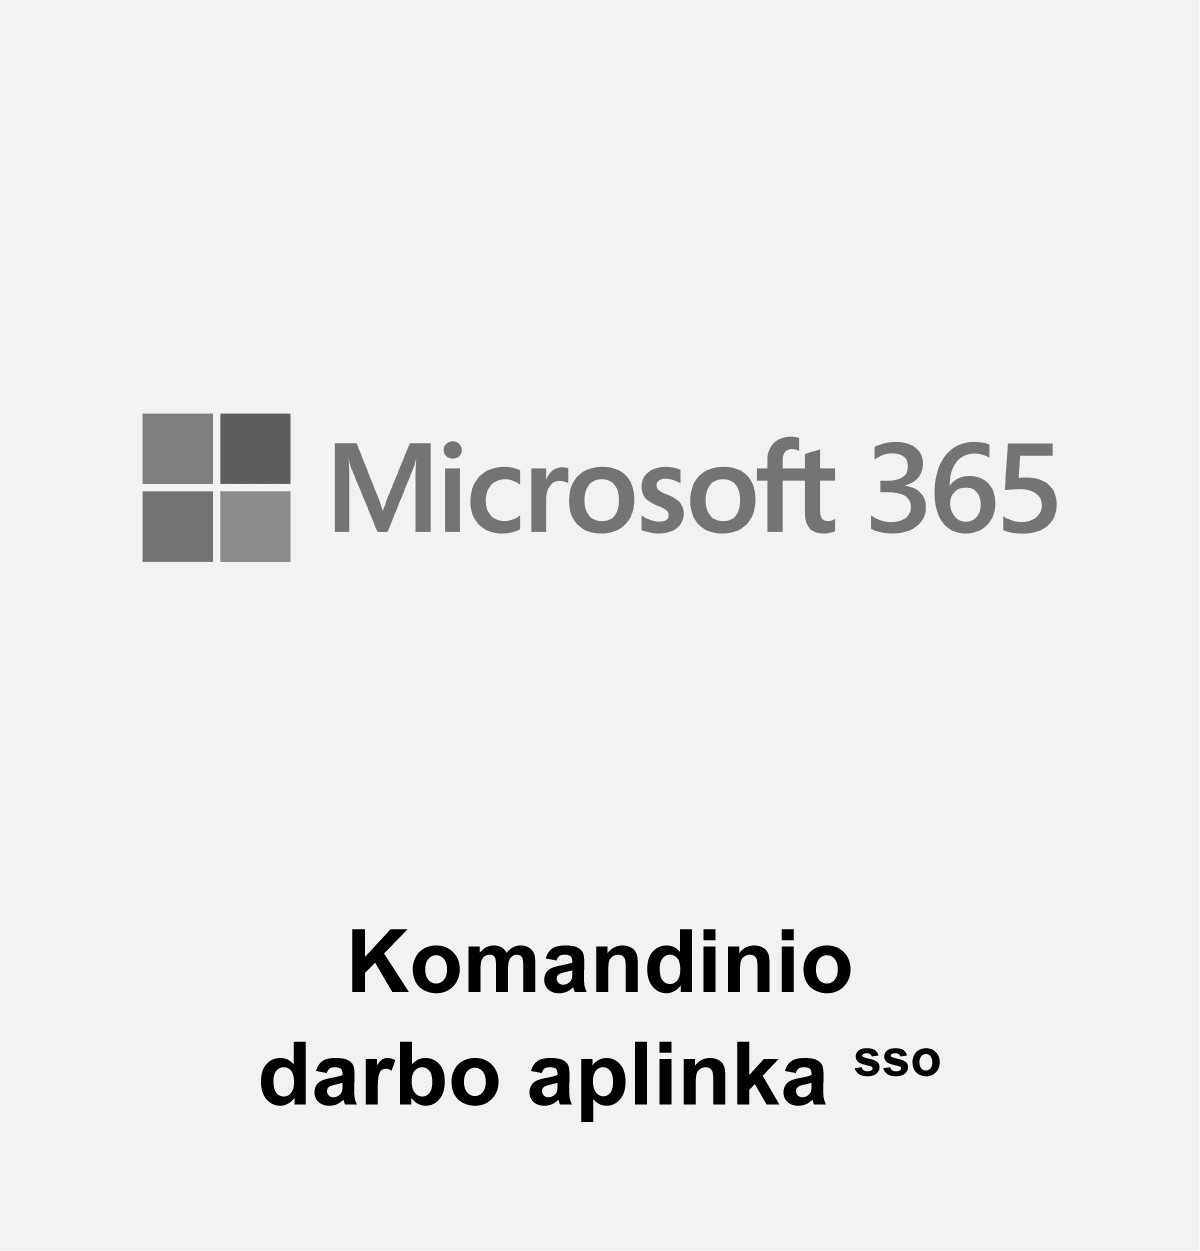 Microsoft365 – komandinio darbo aplinka